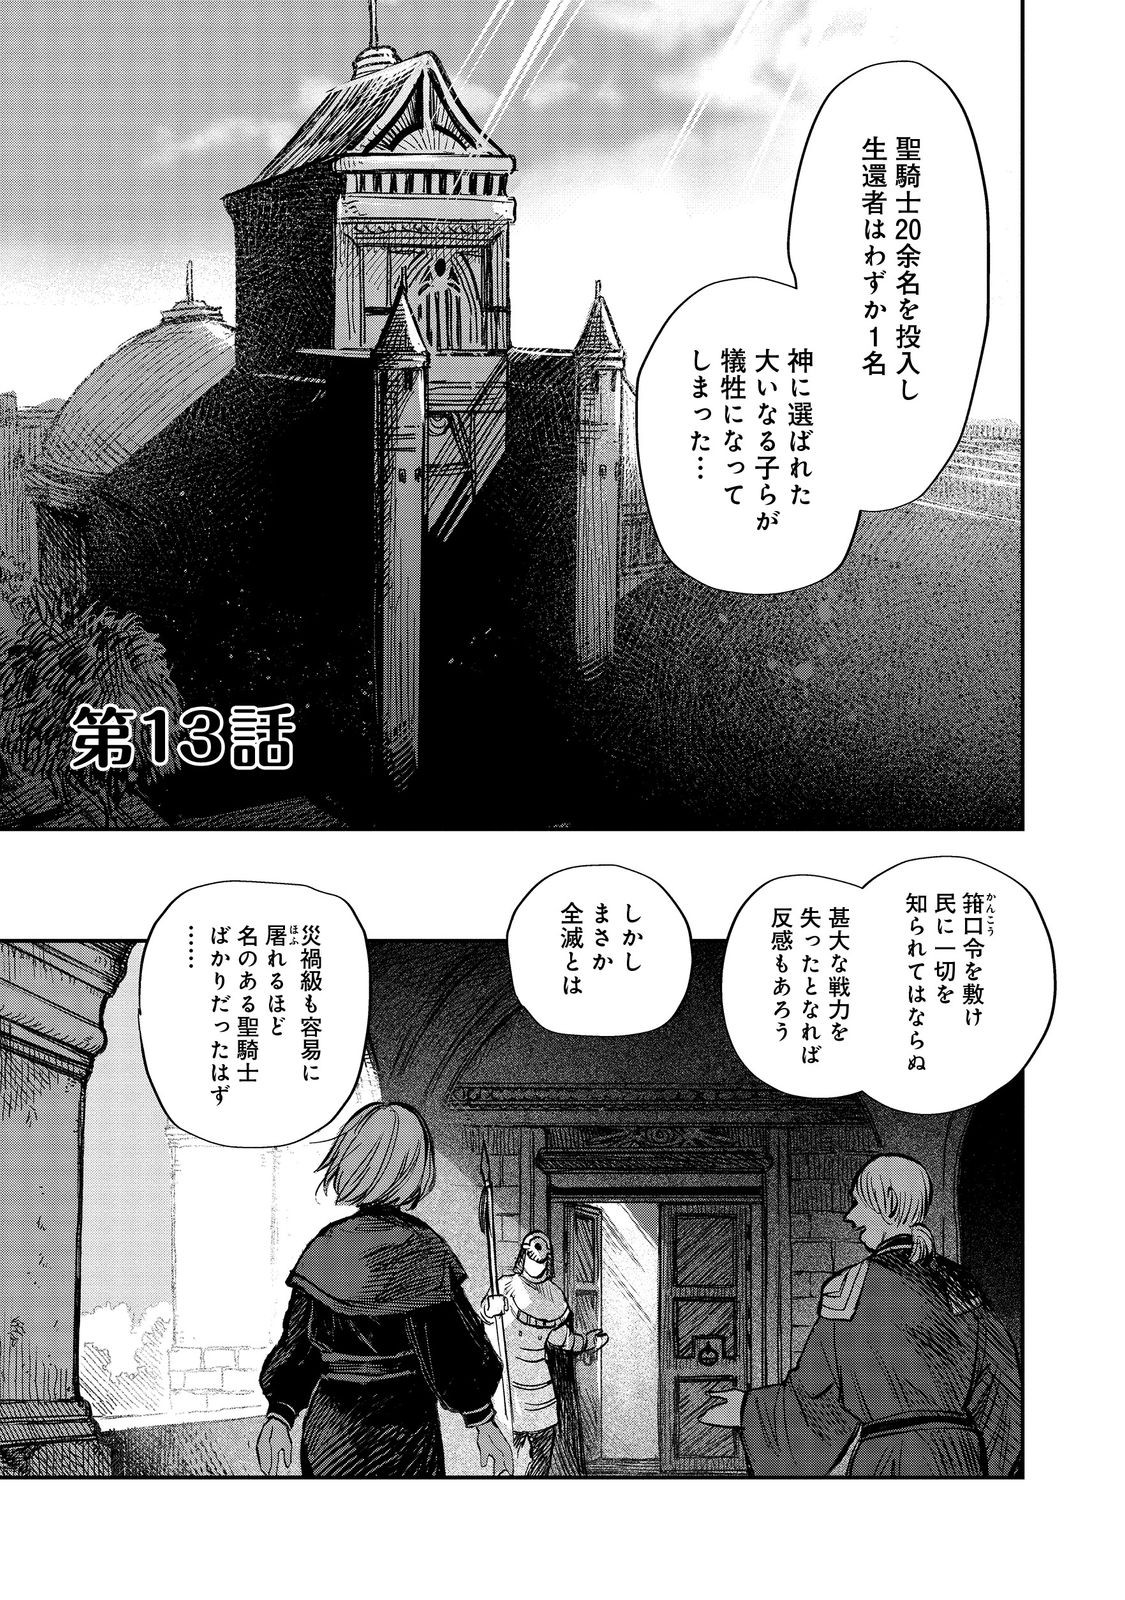 Meiou-sama ga Tooru no desu yo! - Chapter 13 - Page 1